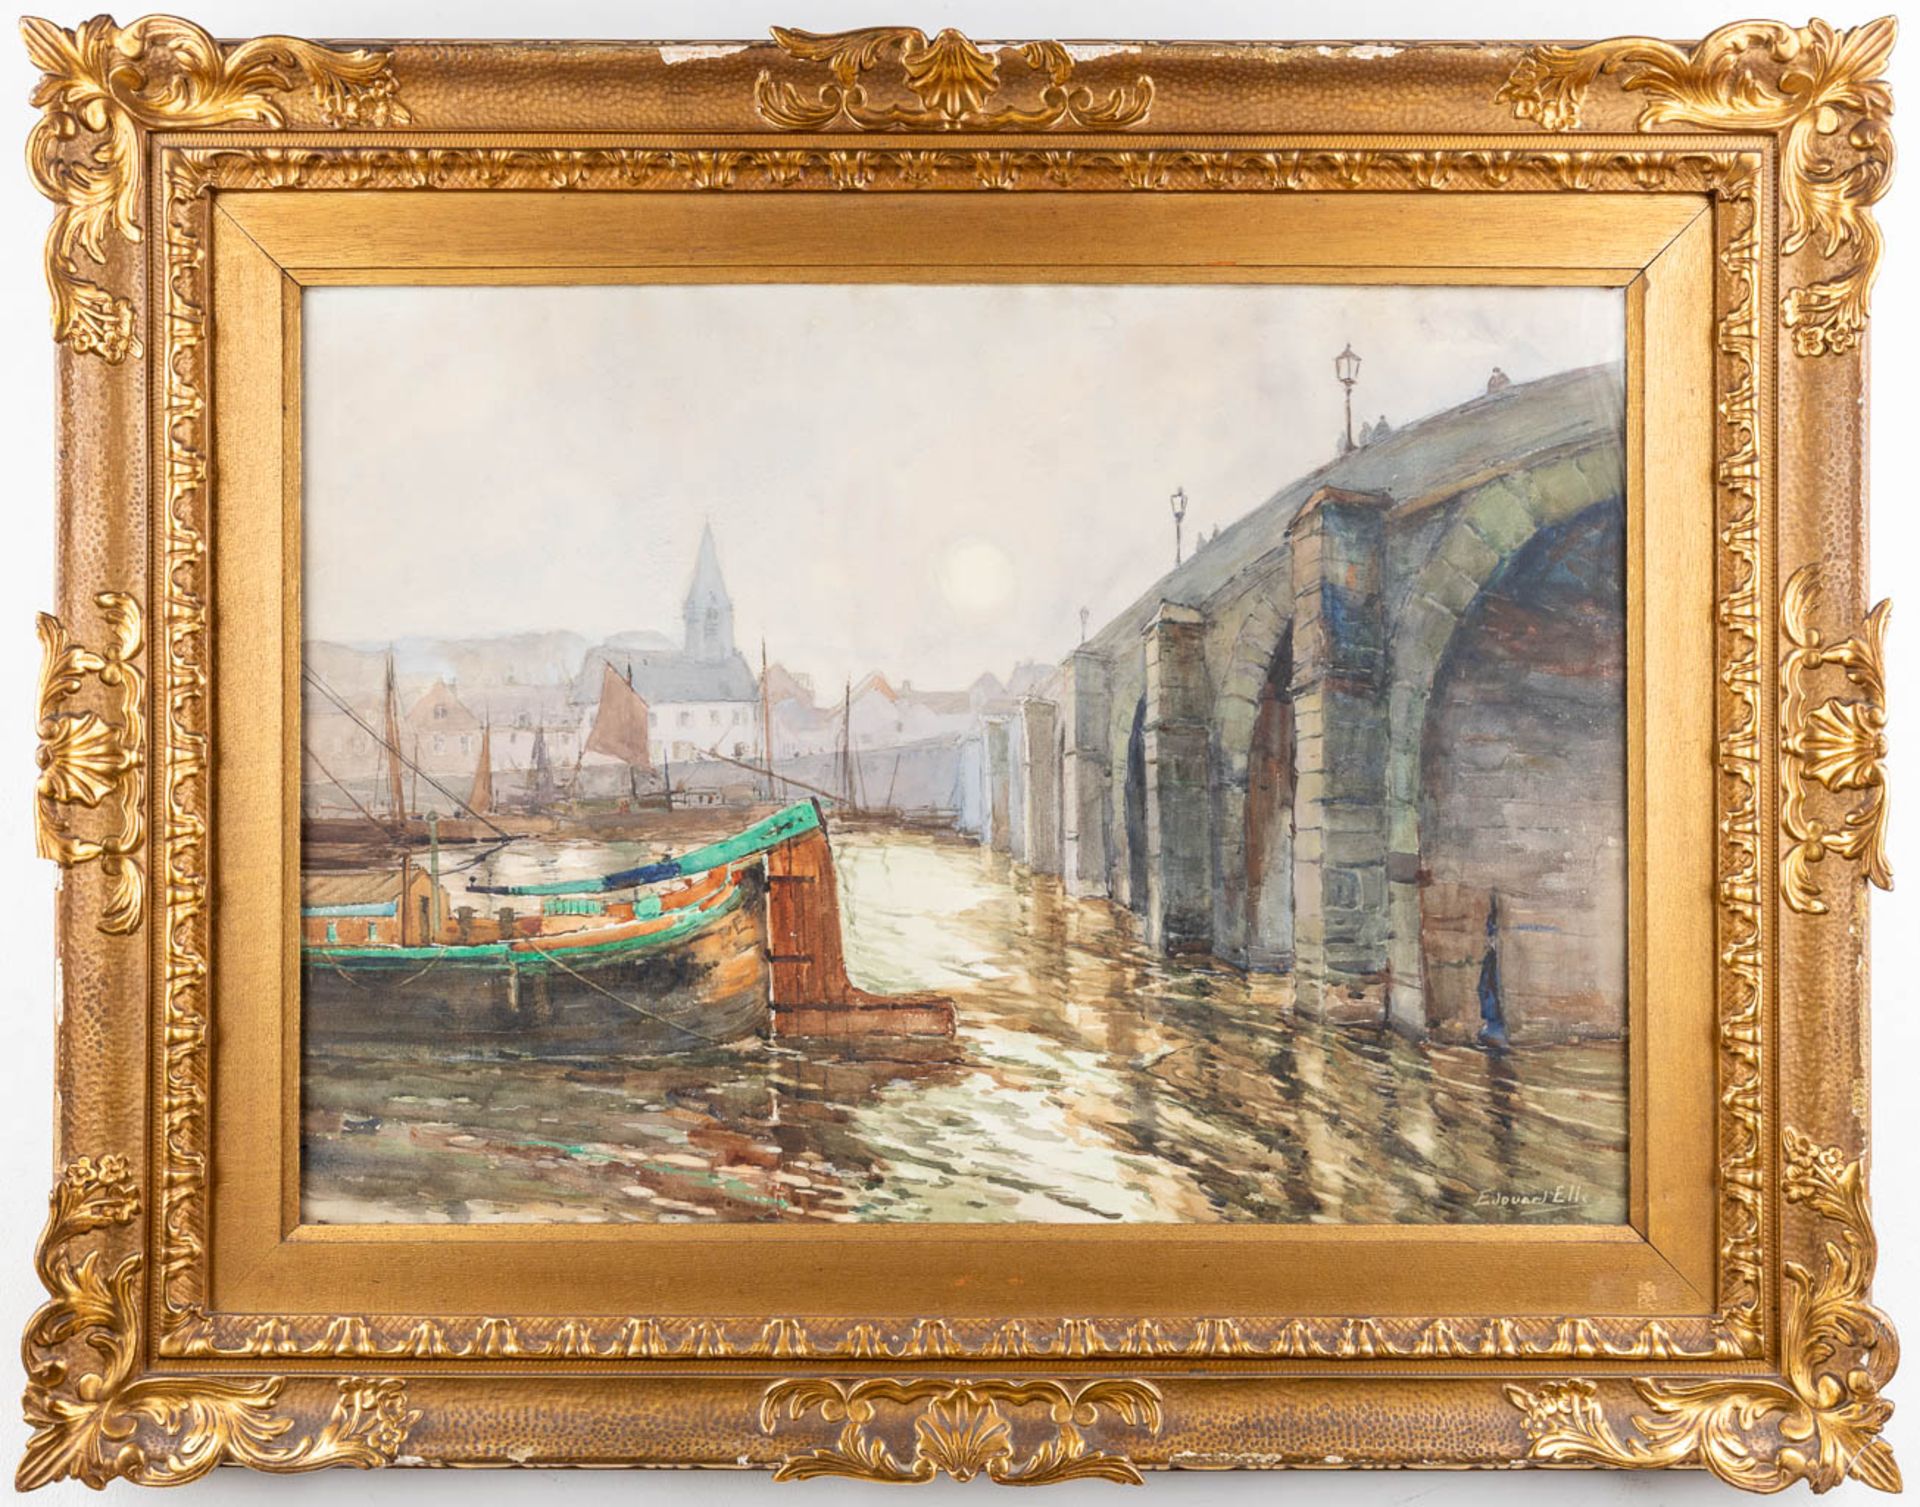 Edouard ELLE (1859-1911) 'The Bridge' watercolour on paper. (W: 77 x H: 55 cm) - Image 3 of 9